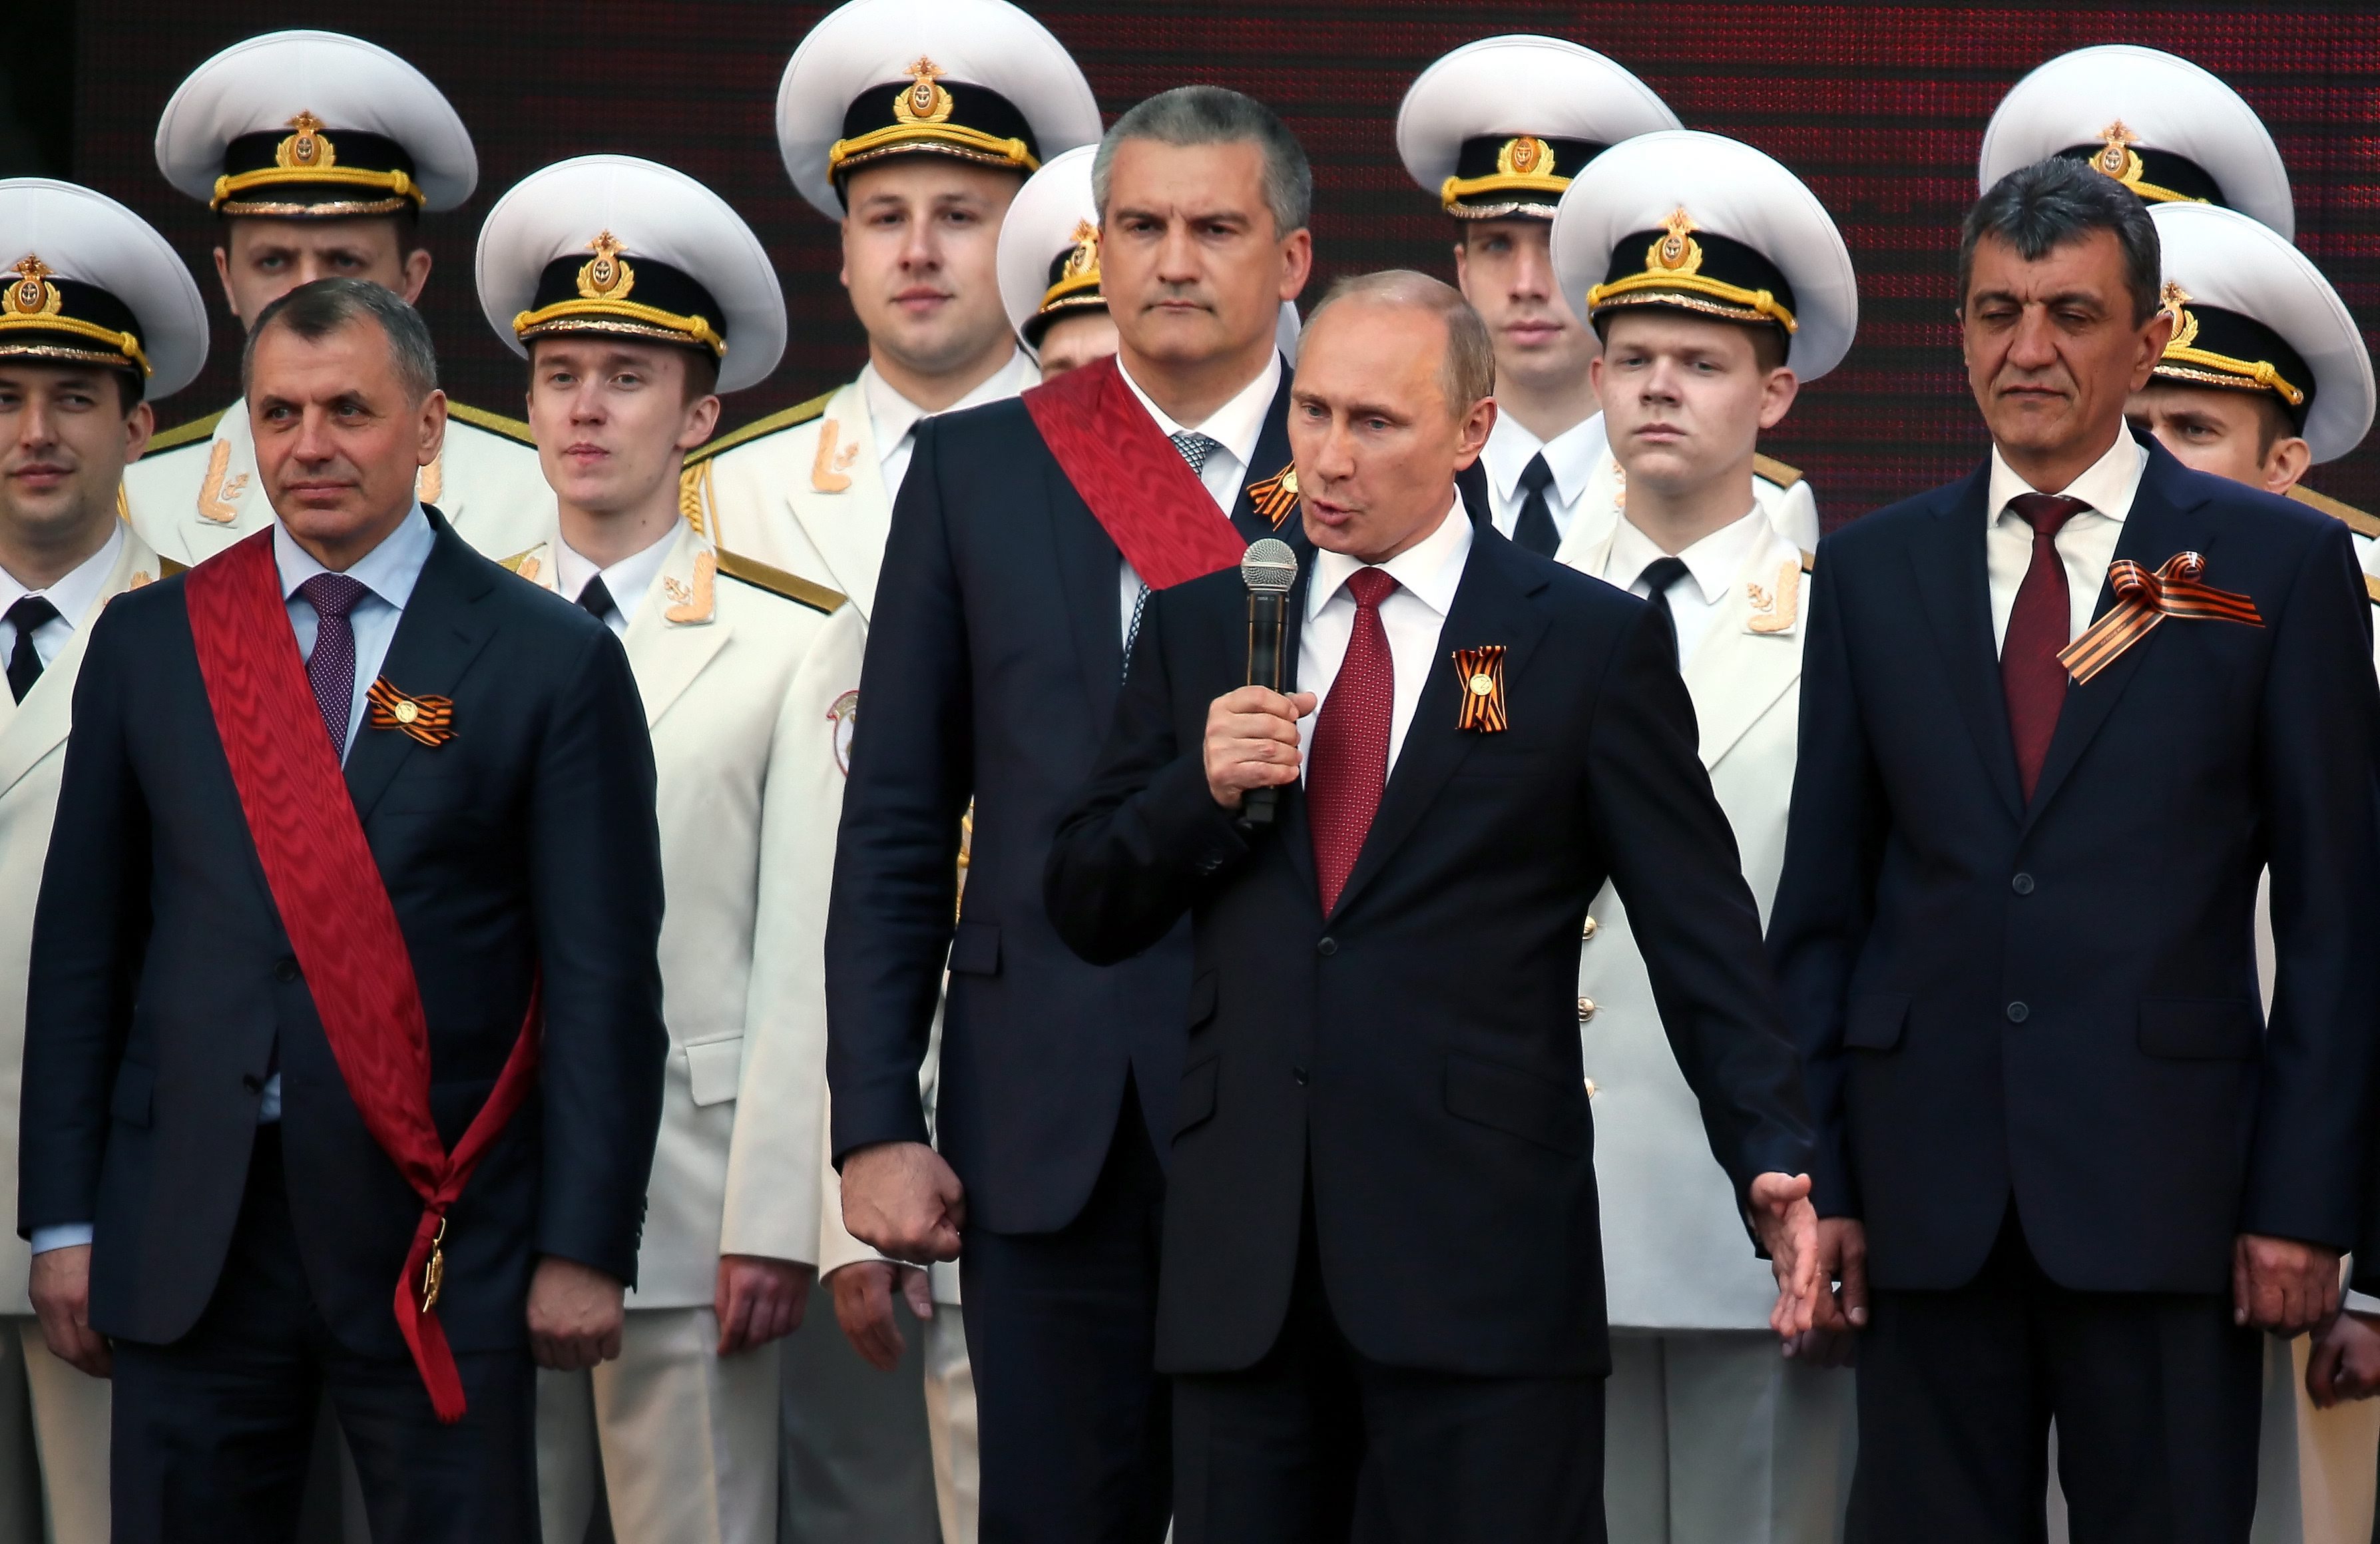 Нови санкции срещу Русия. Москва: Това е скандал